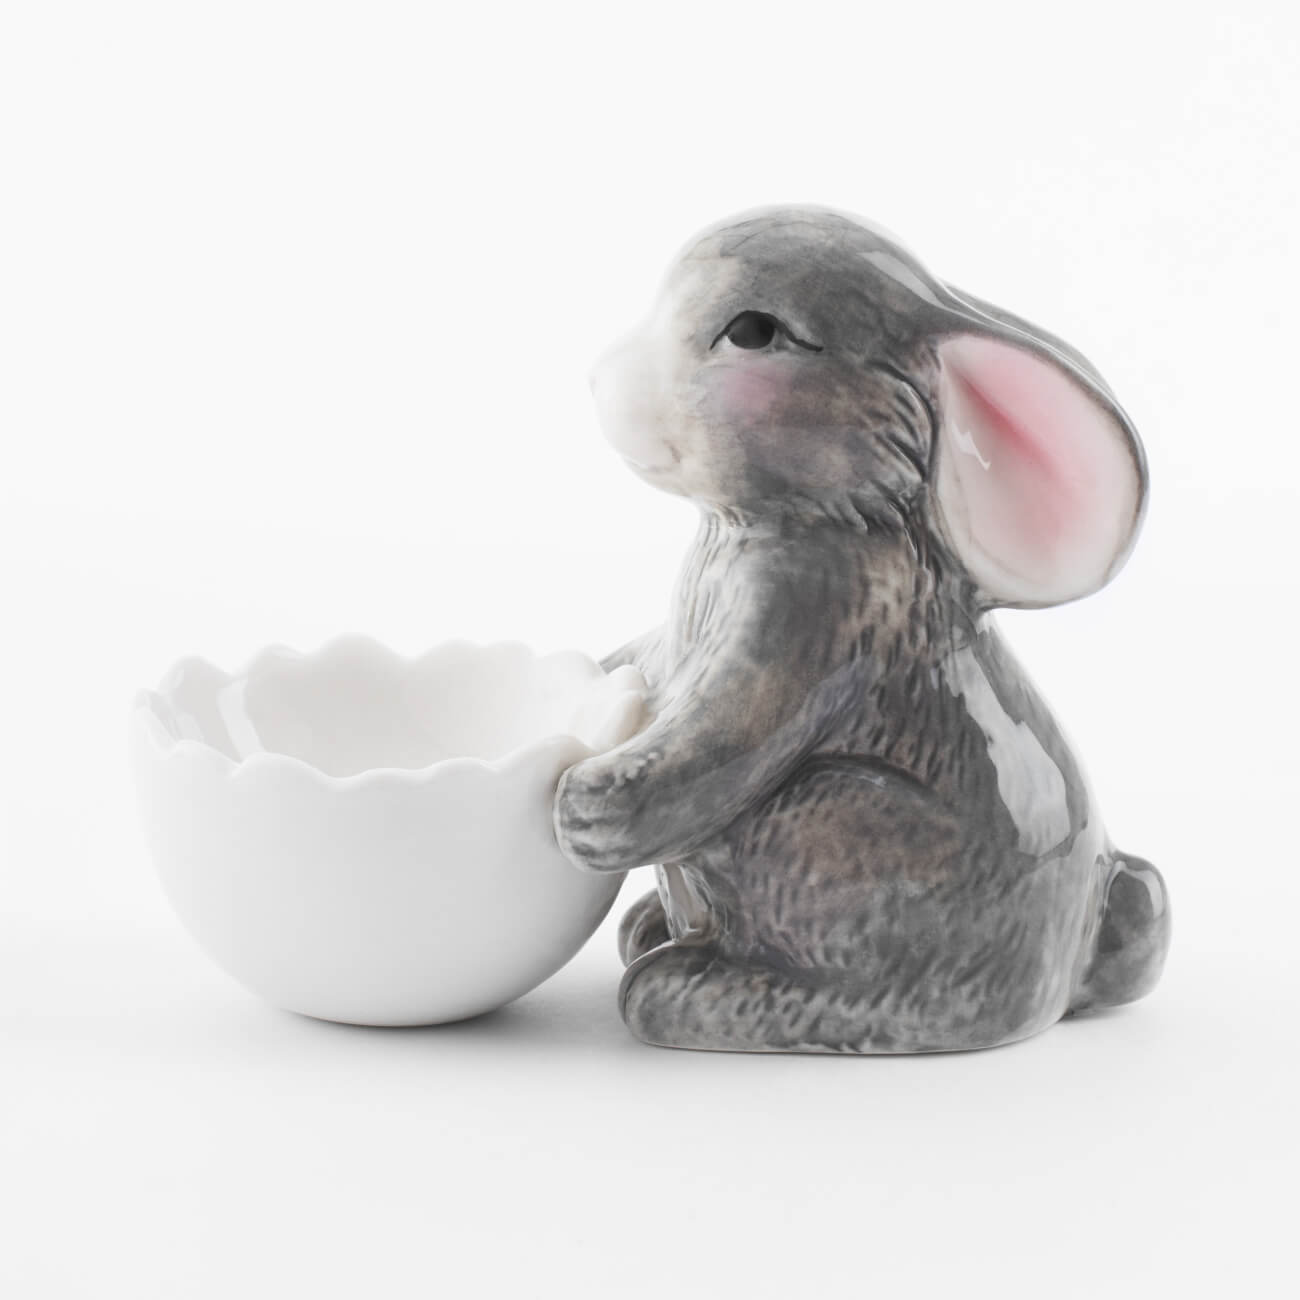 Подставка для яйца, 11 см, фарфор P, бело-серая, Кролик со скорлупой, Pure Easter подставка для зубной щетки 4 см фарфор р молочная minito